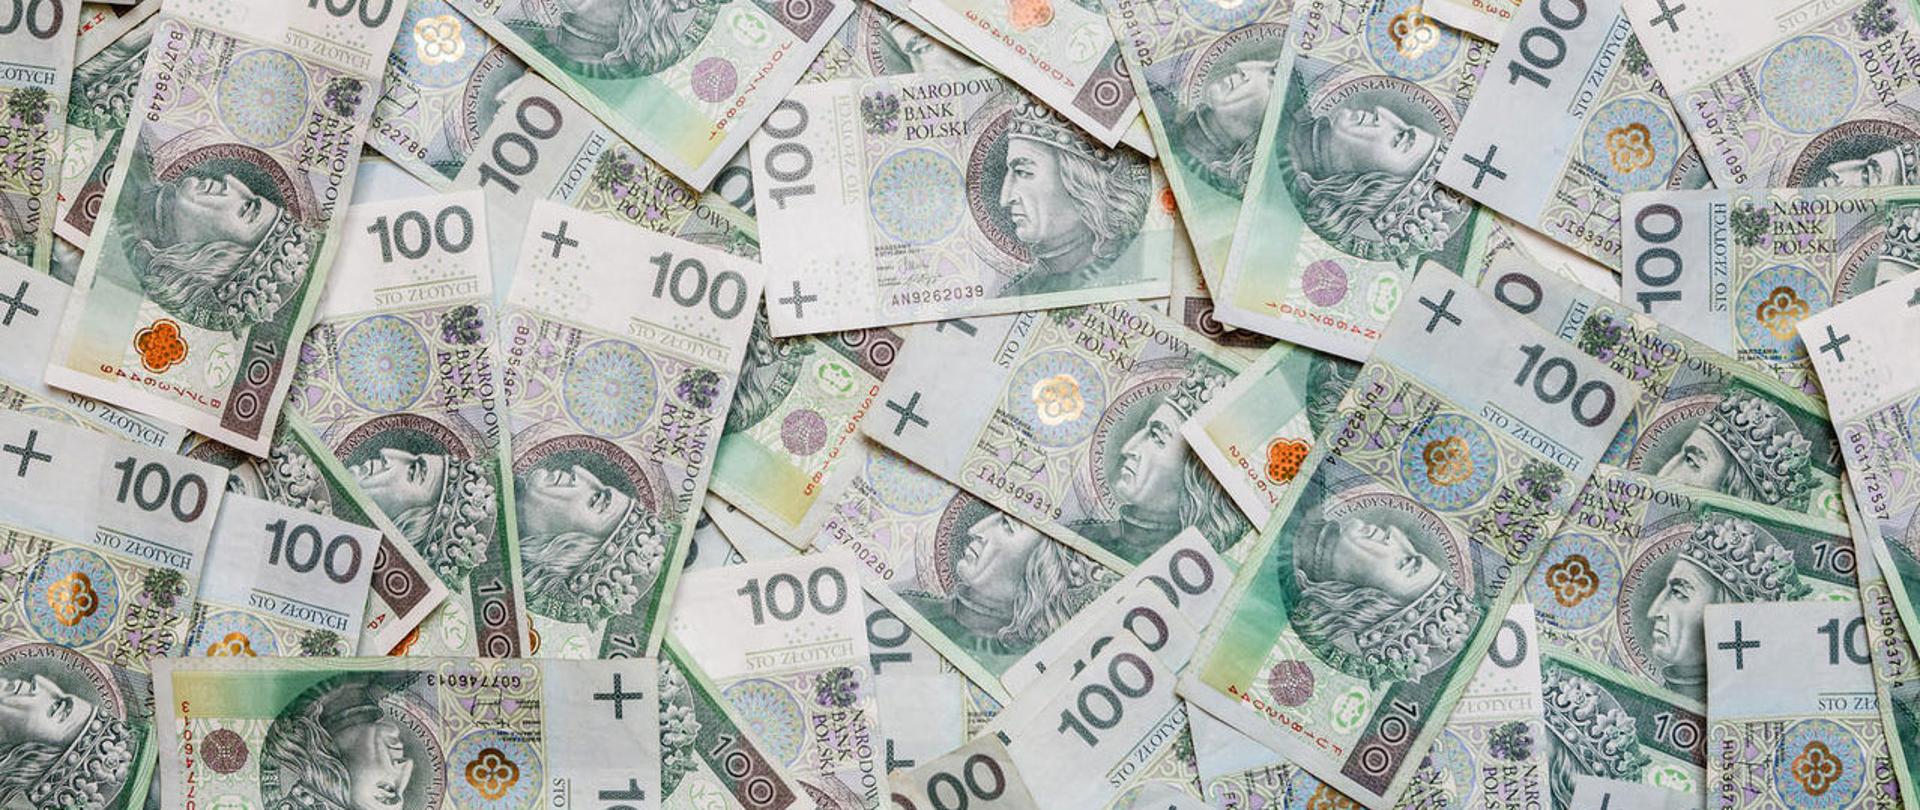 Chaotycznie rozrzucone banknoty o nominale 100 zł.